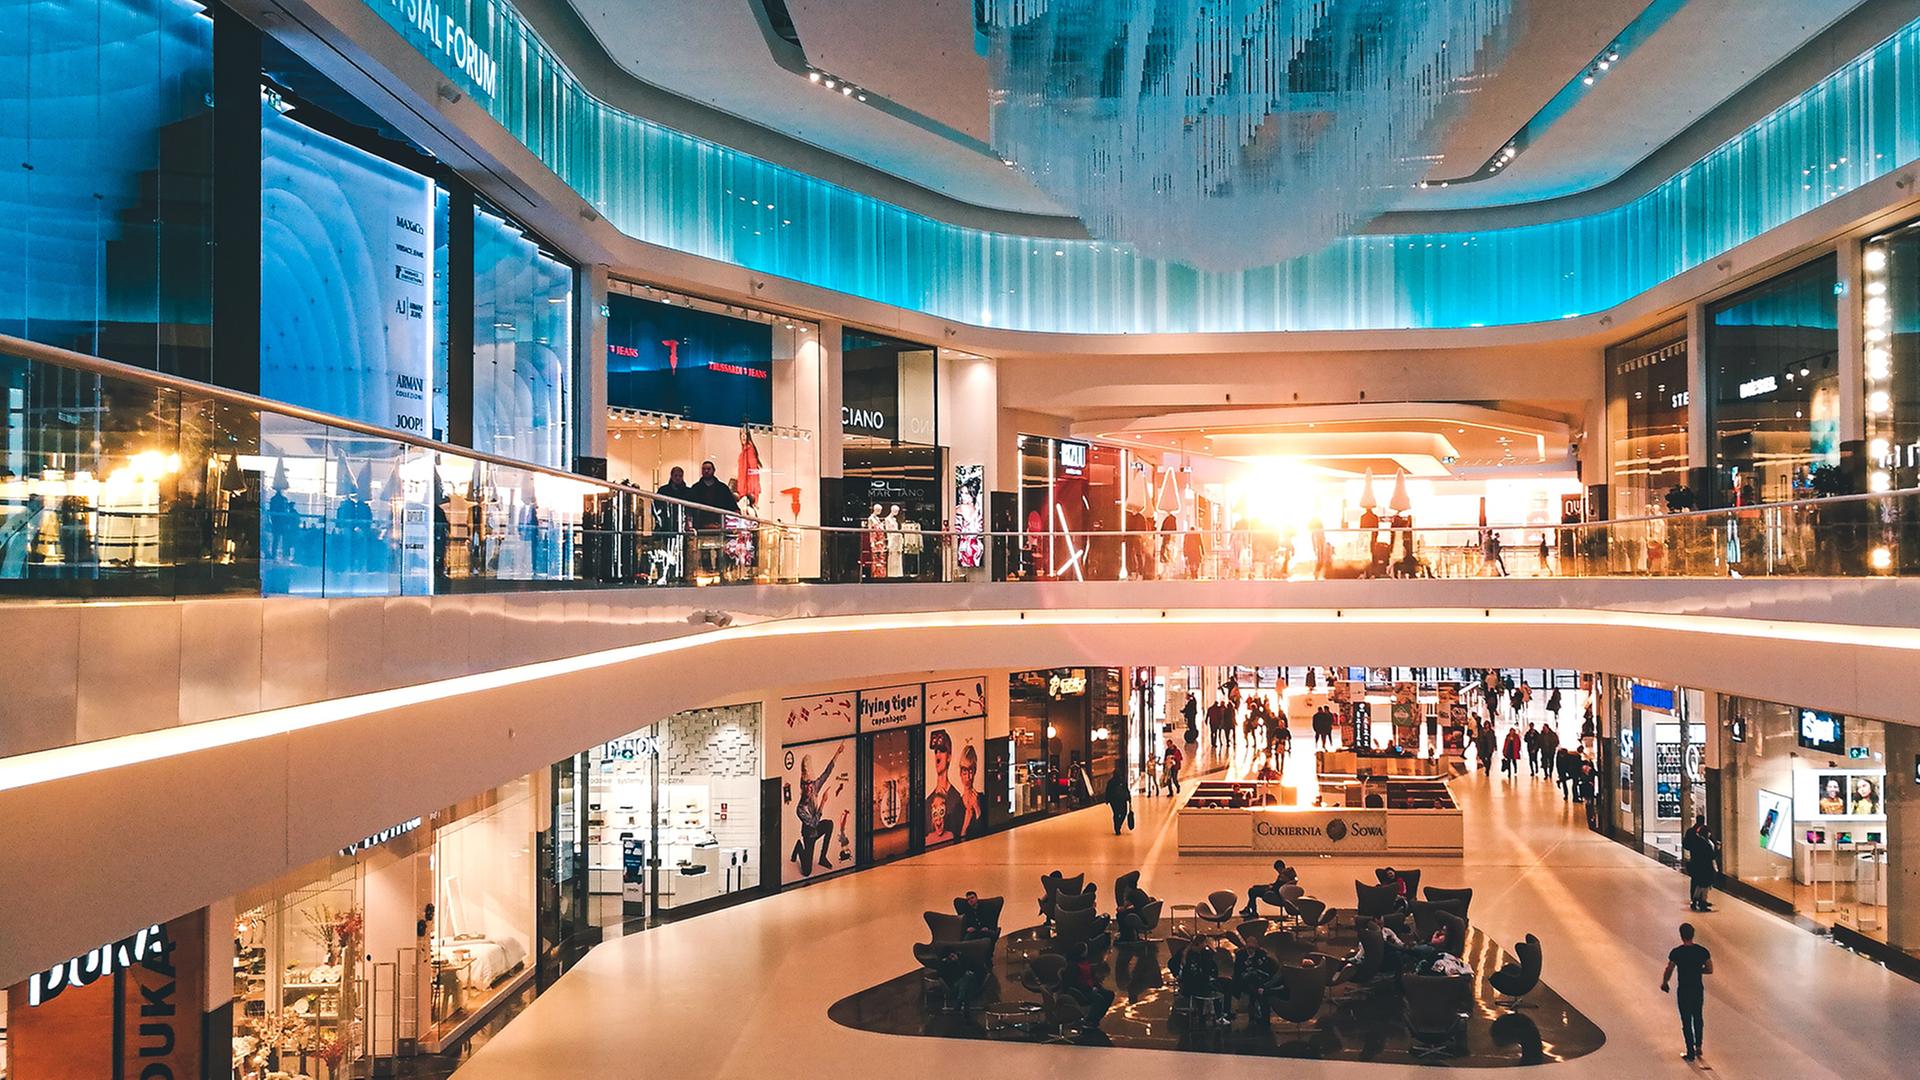 Blick in das bläulich illuminierte Atrium eines Einkaufszentrums